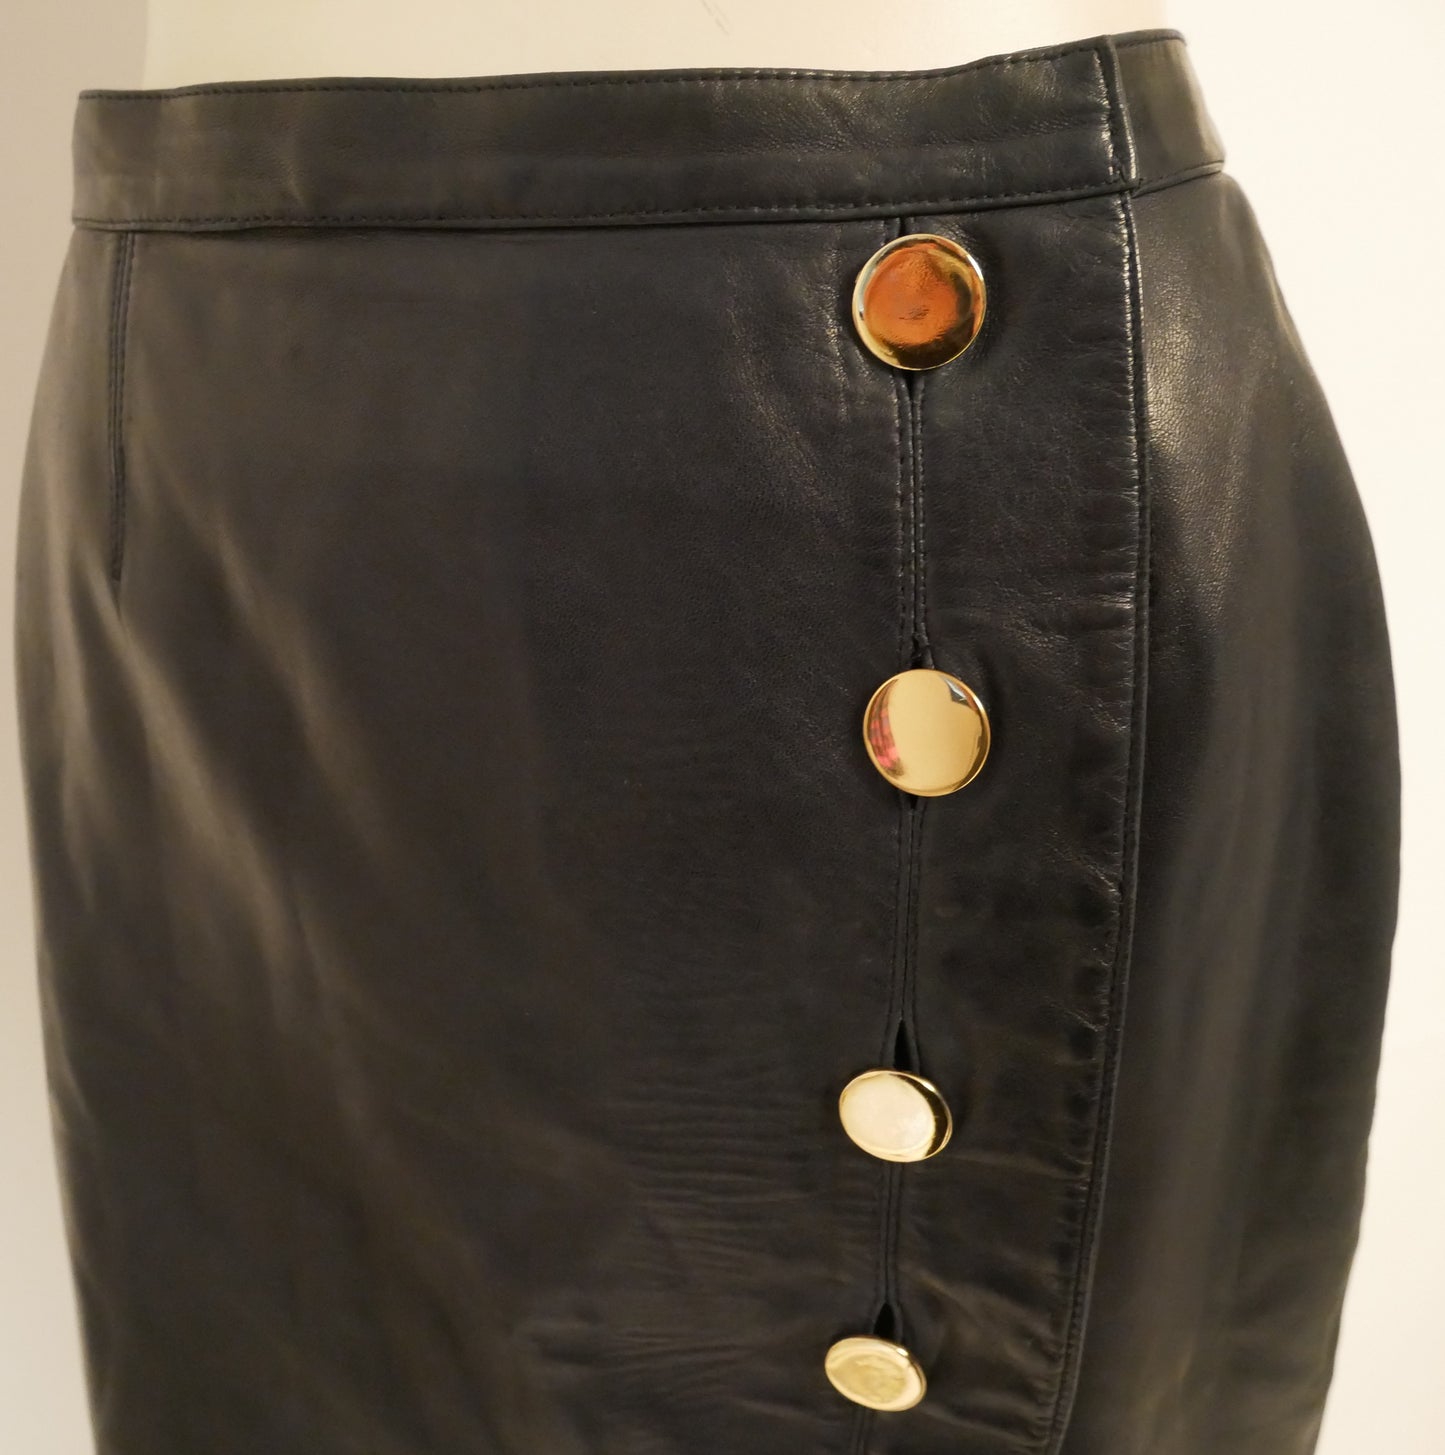 Saint Laurent Rive Gauche navy blue leather vintage wrap skirt - M - 1980s